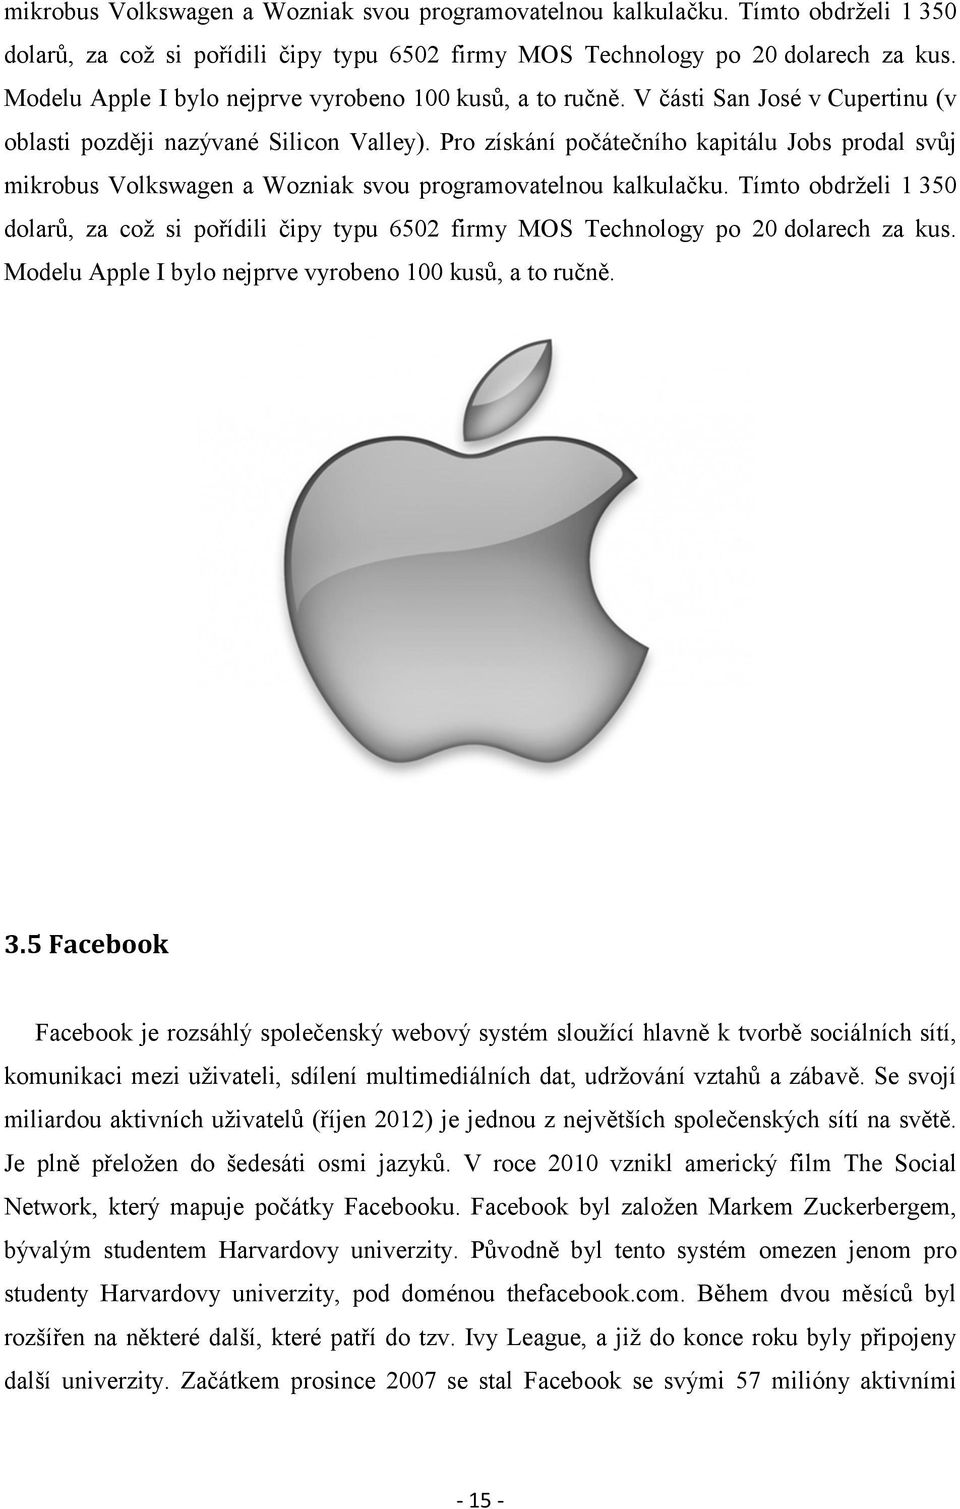 Pro získání počátečního kapitálu Jobs prodal svůj  Modelu Apple I bylo nejprve vyrobeno 100 kusů, a to ručně. 3.